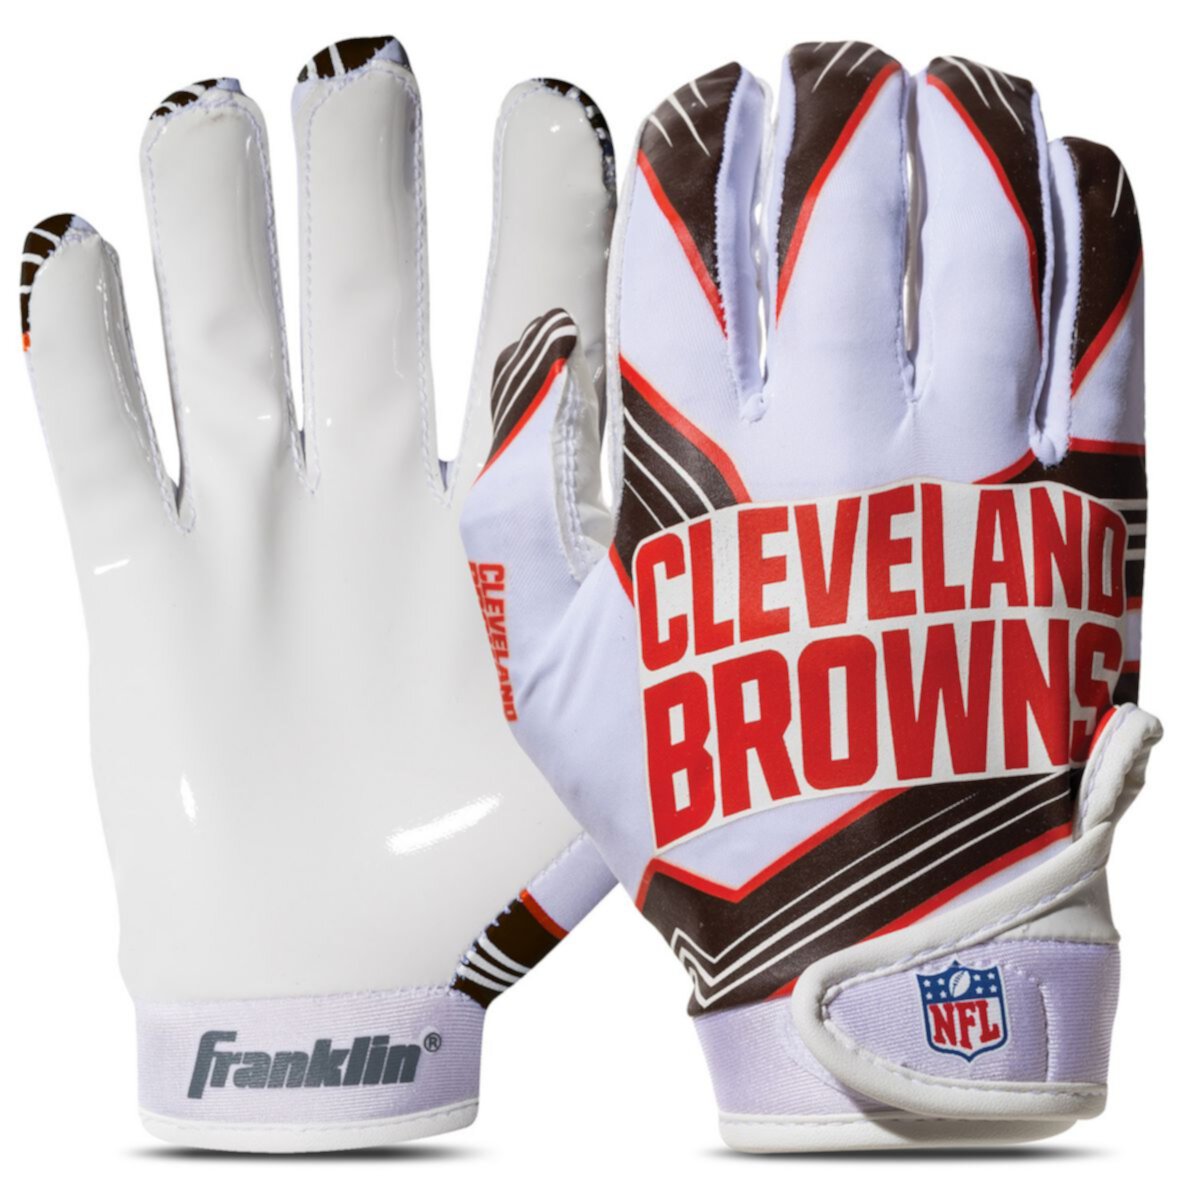 Franklin Sports Cleveland Browns Молодежные футбольные перчатки НФЛ Franklin Sports